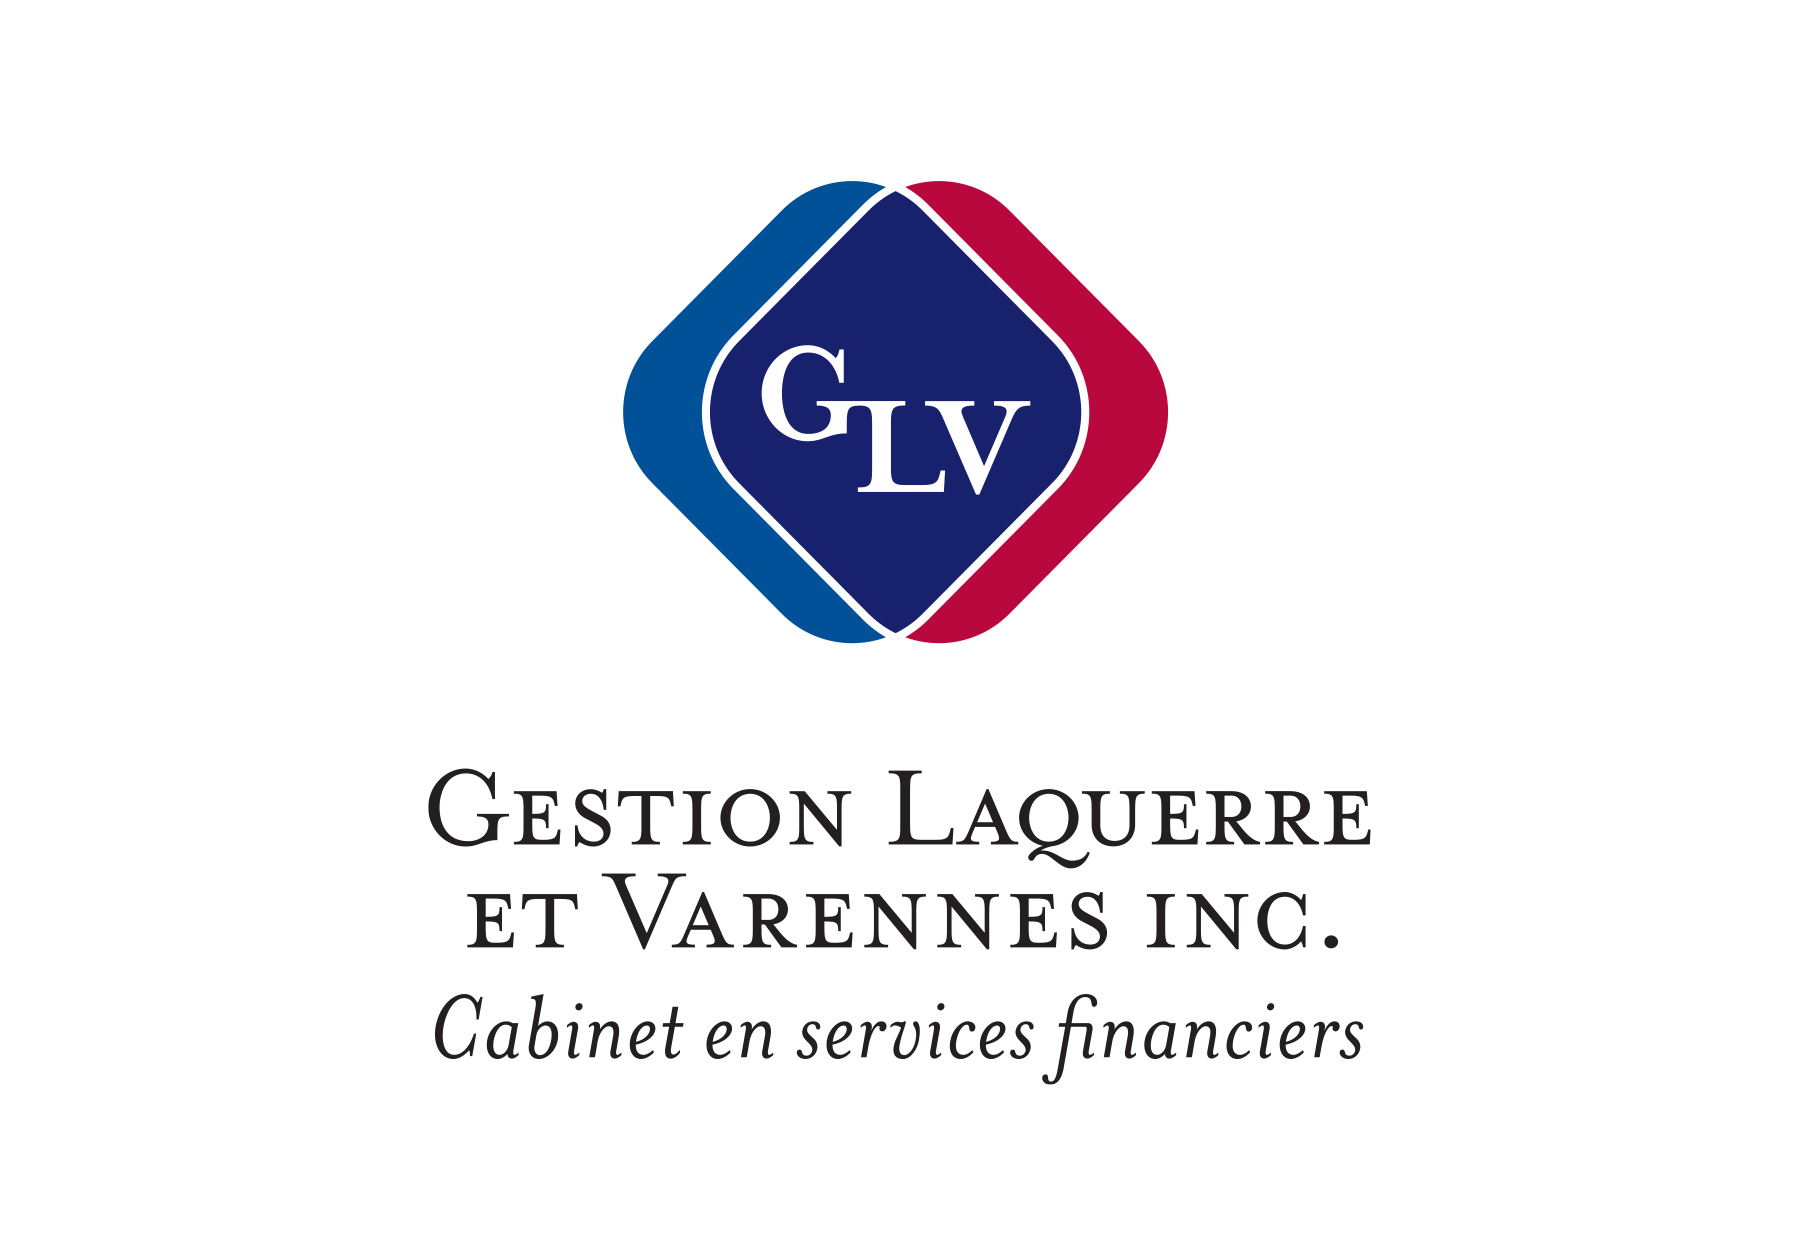 Gestion Laquerre et Varennes Cabinet en services financiers logo